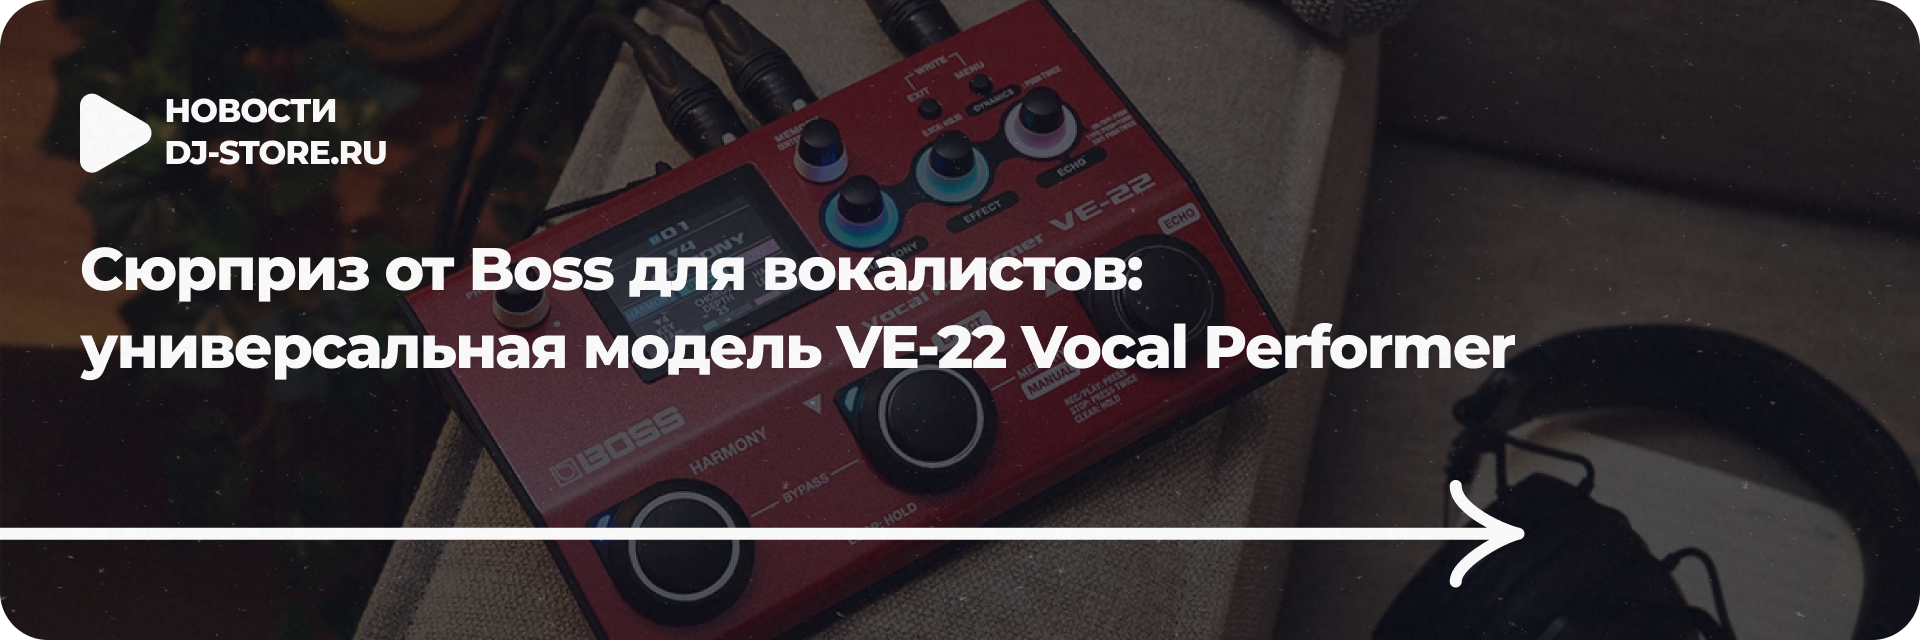 VE-22 Vocal Performer